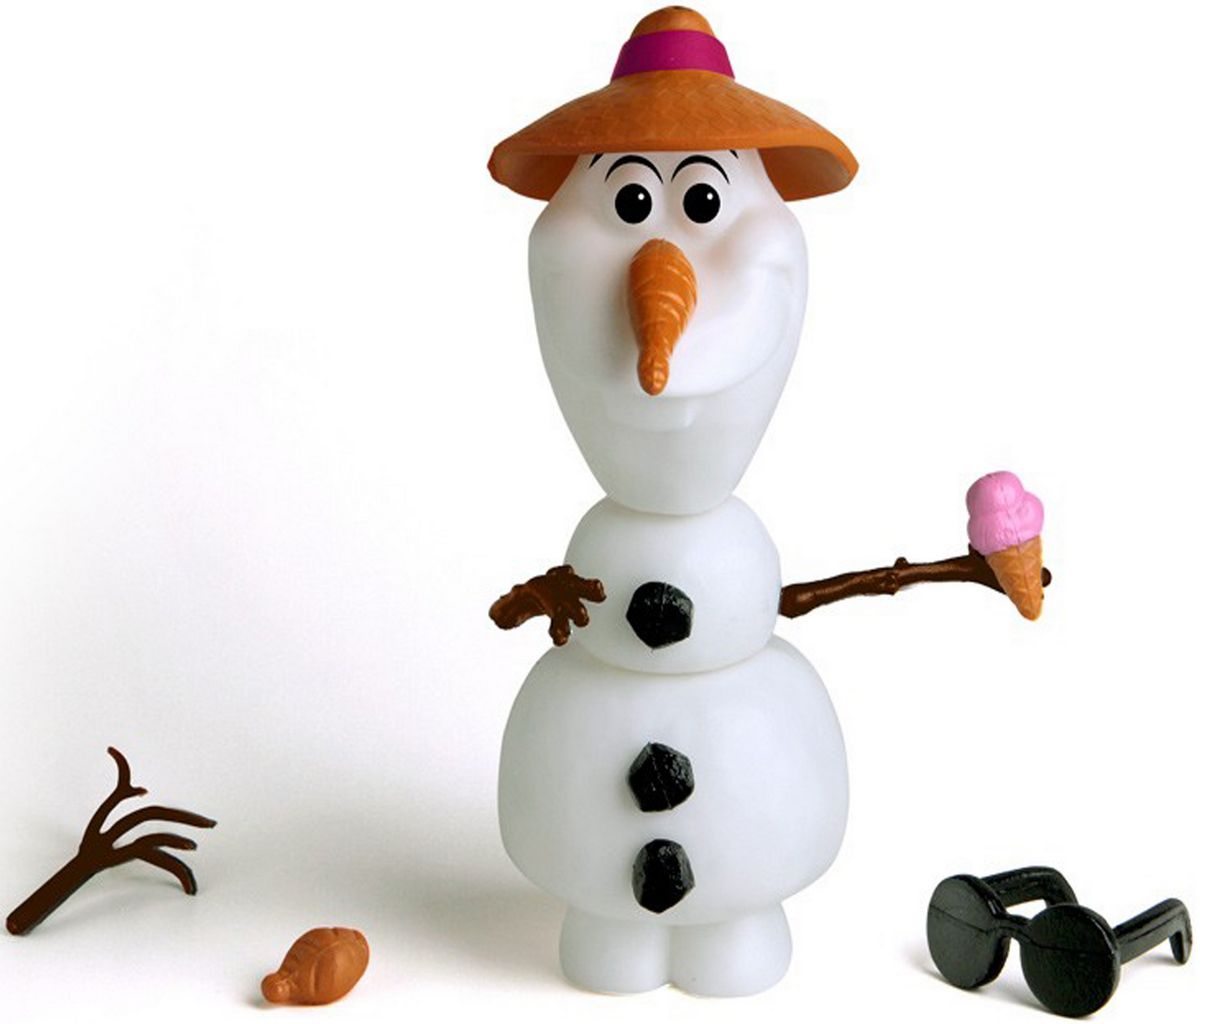 Boneco Olaf 14 Peças Para Montar Desmontar Personalizar Bolhas De Sabão Brinquedo Infantil Menino Menina Frozen Boneco De Neve Disney Elka 